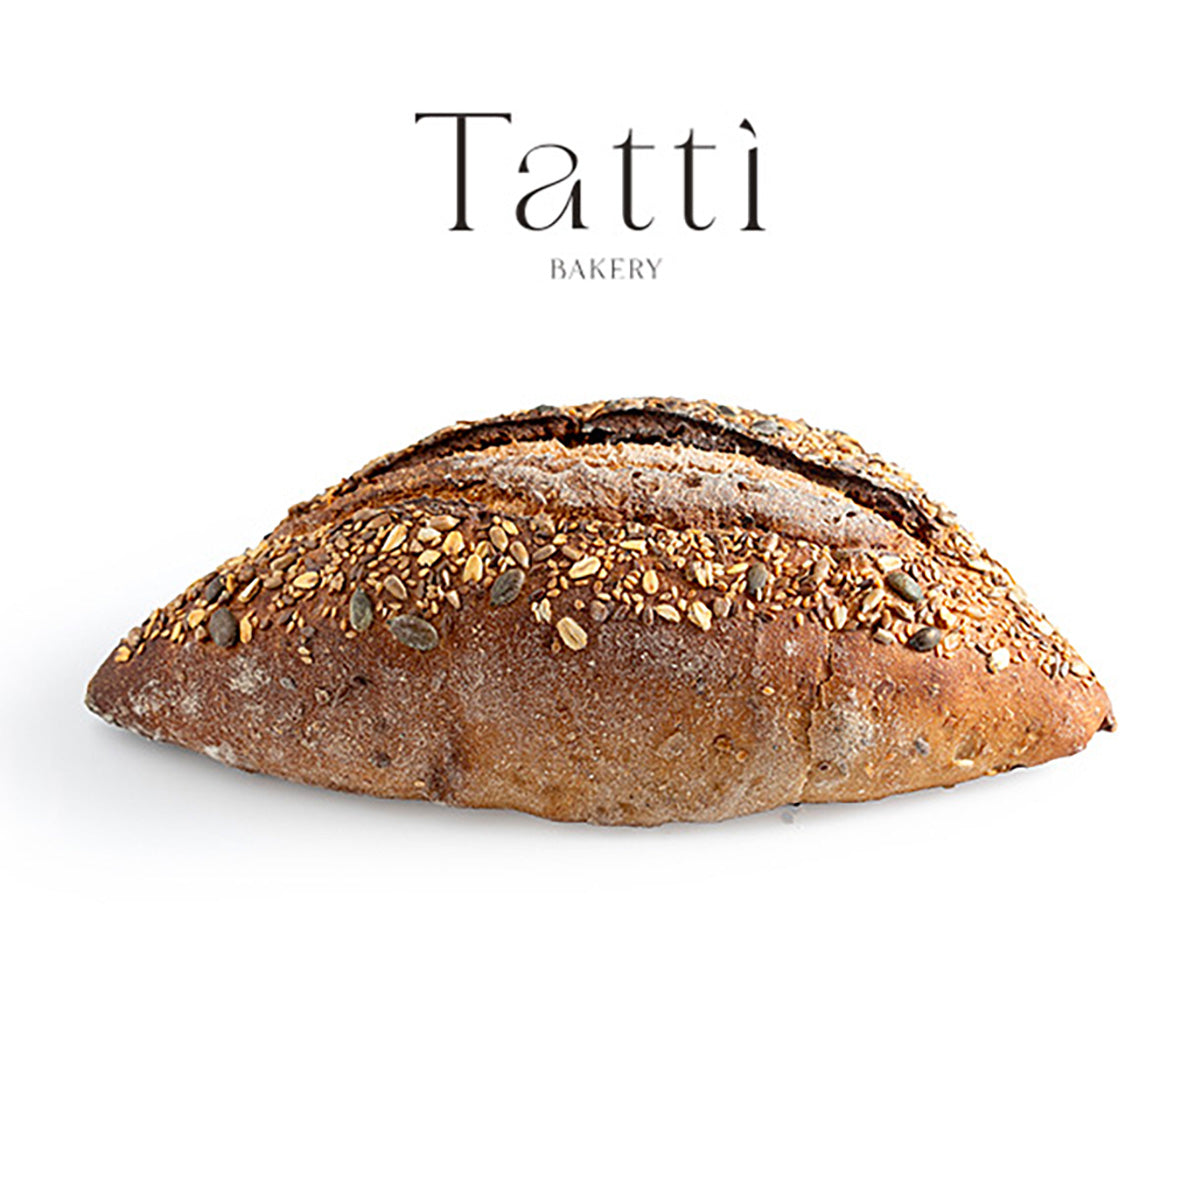 לחם בריאות פרוס - Tatti bakery